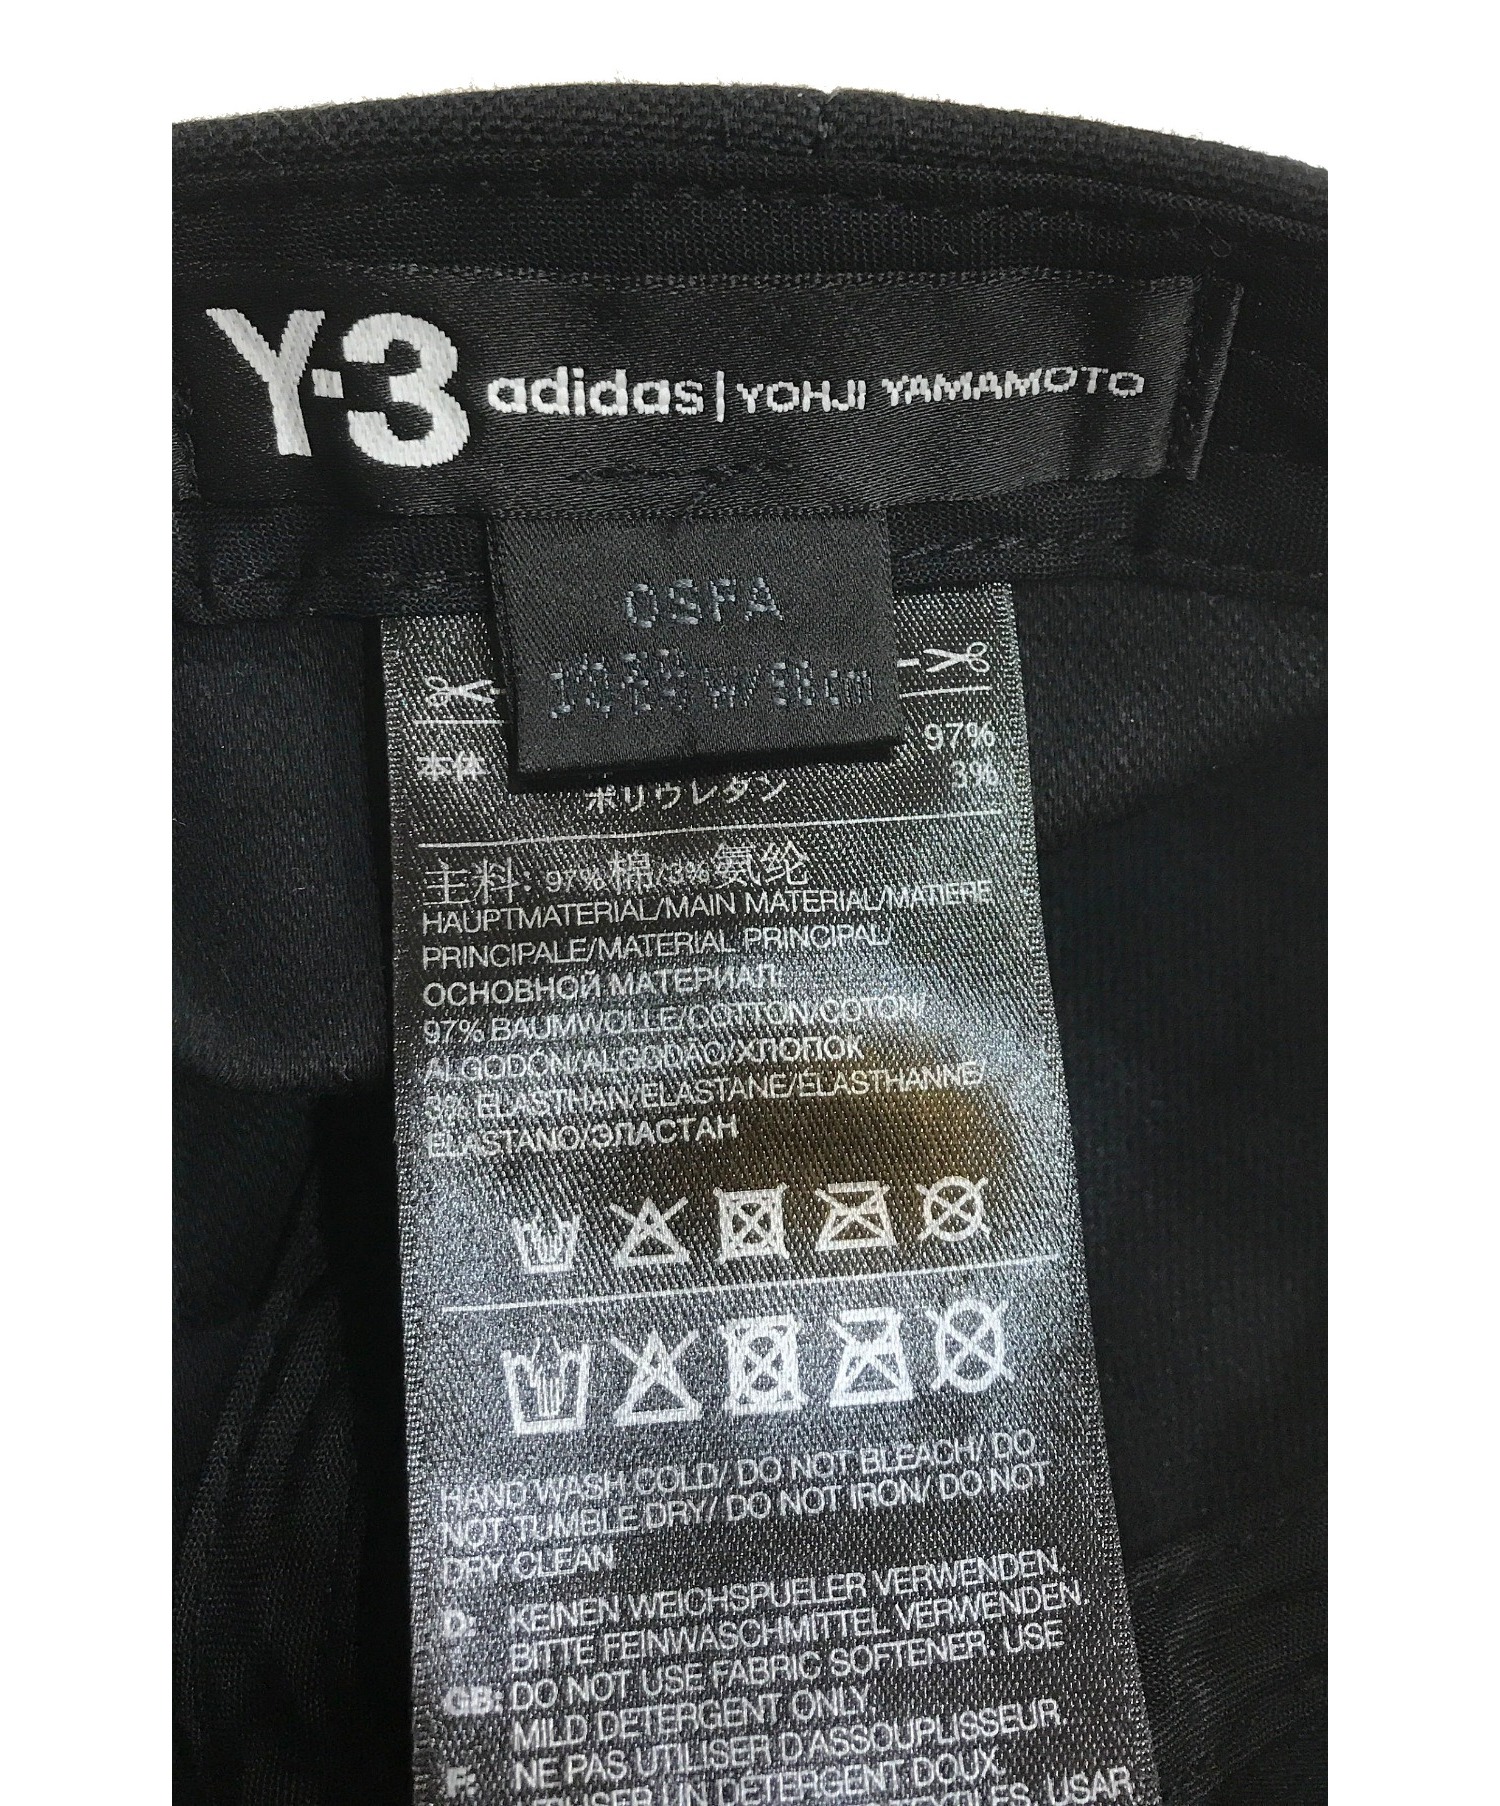 Y-3 (ワイスリー) ワンポイントロゴ刺繍キャップ ブラック サイズ:下記参照 FH9269